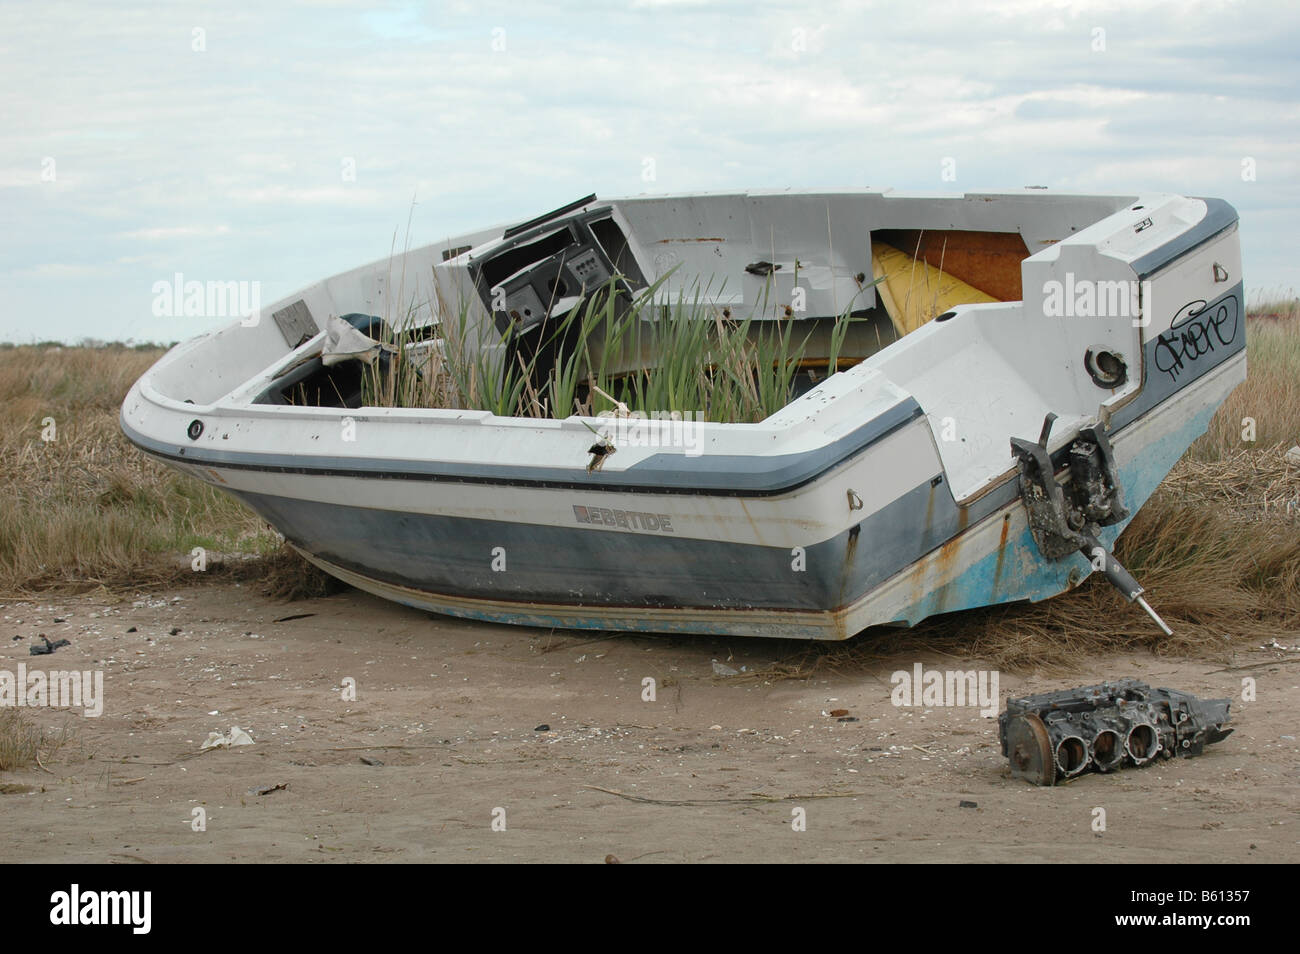 boat abandoned on shore Stock Photo